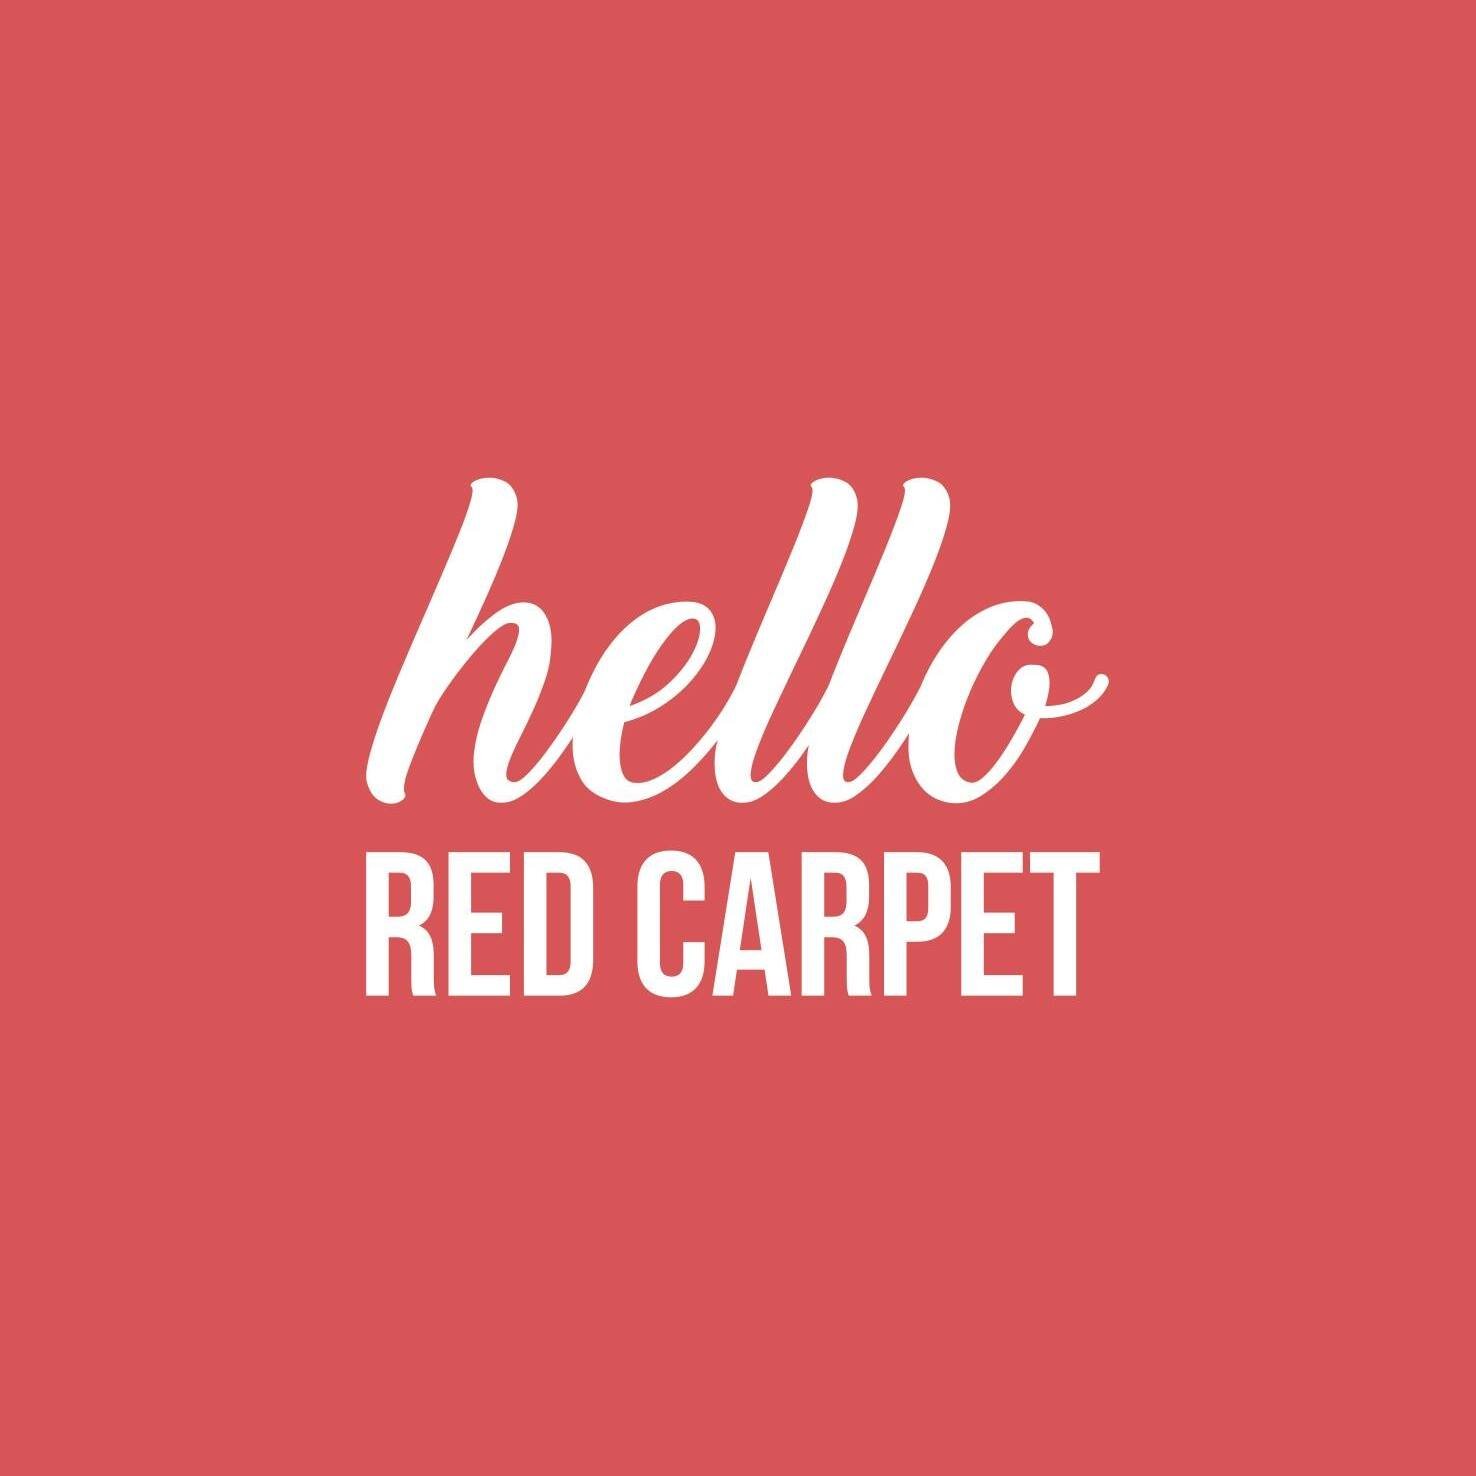 hello red carpet logo.jpg